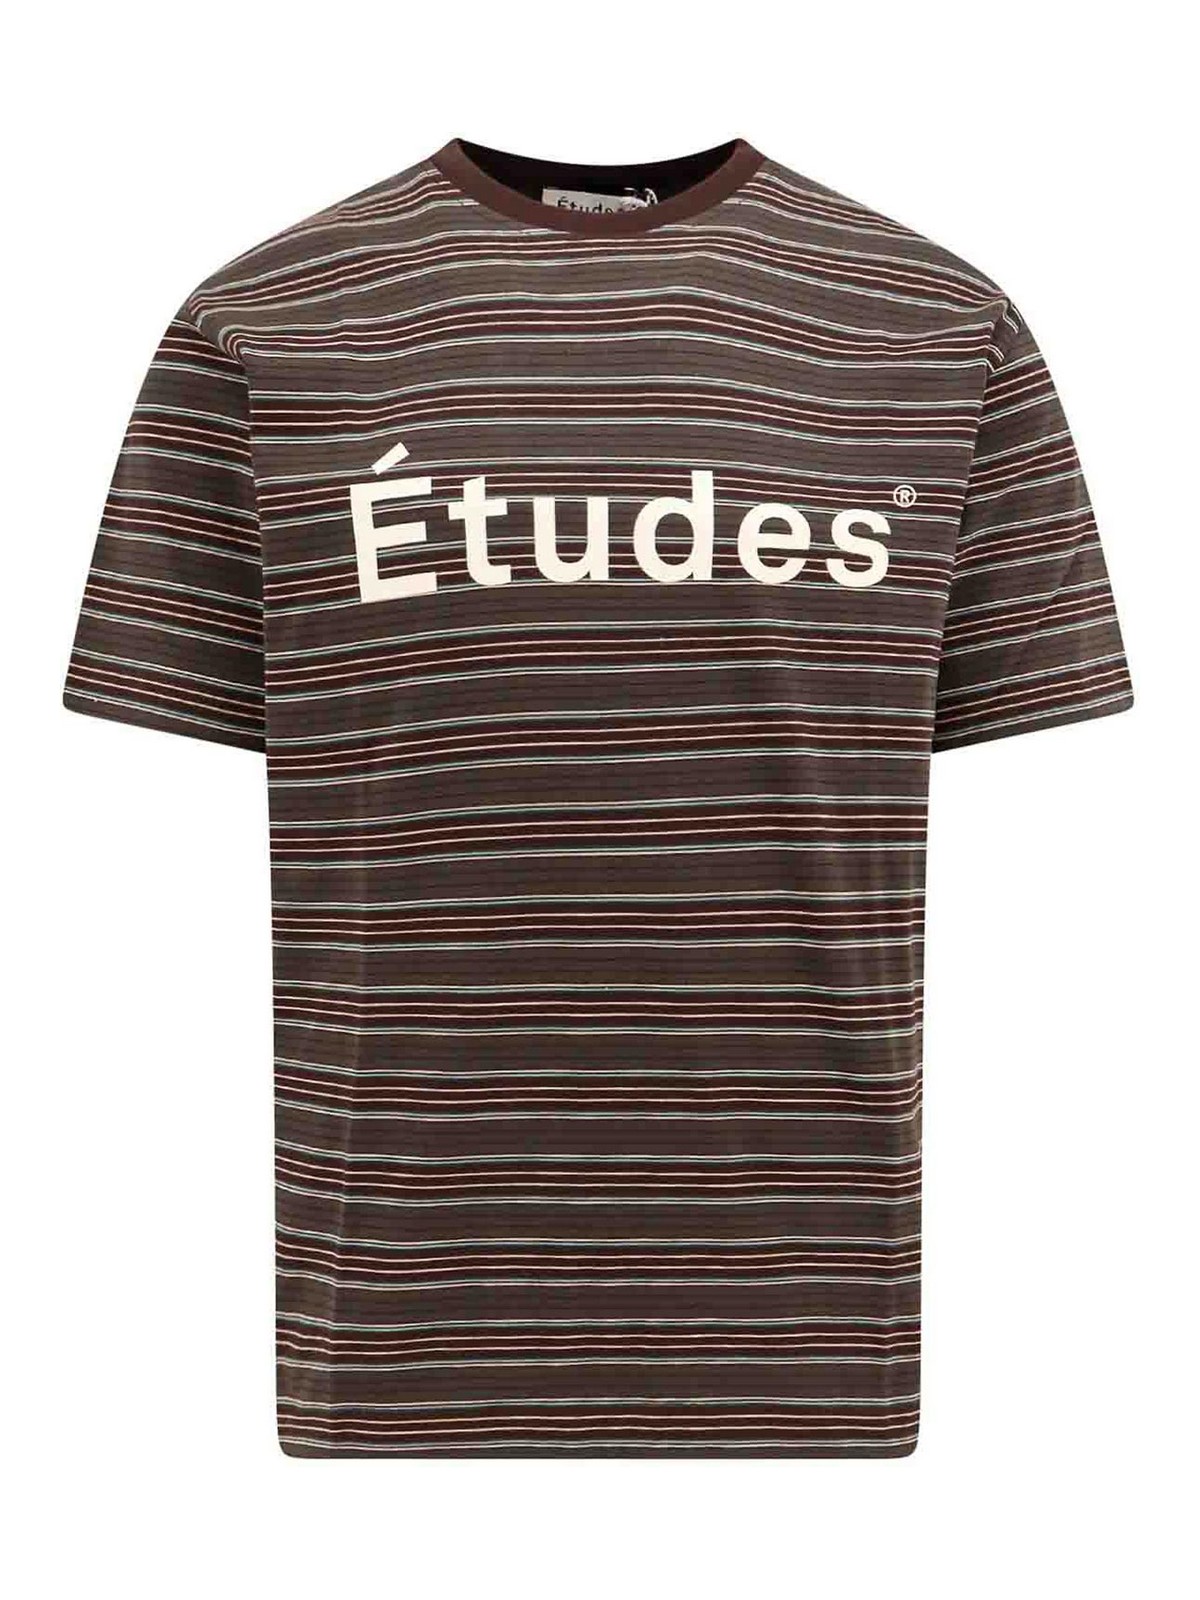 Shop Etudes Studio Camiseta - Marrón In Brown